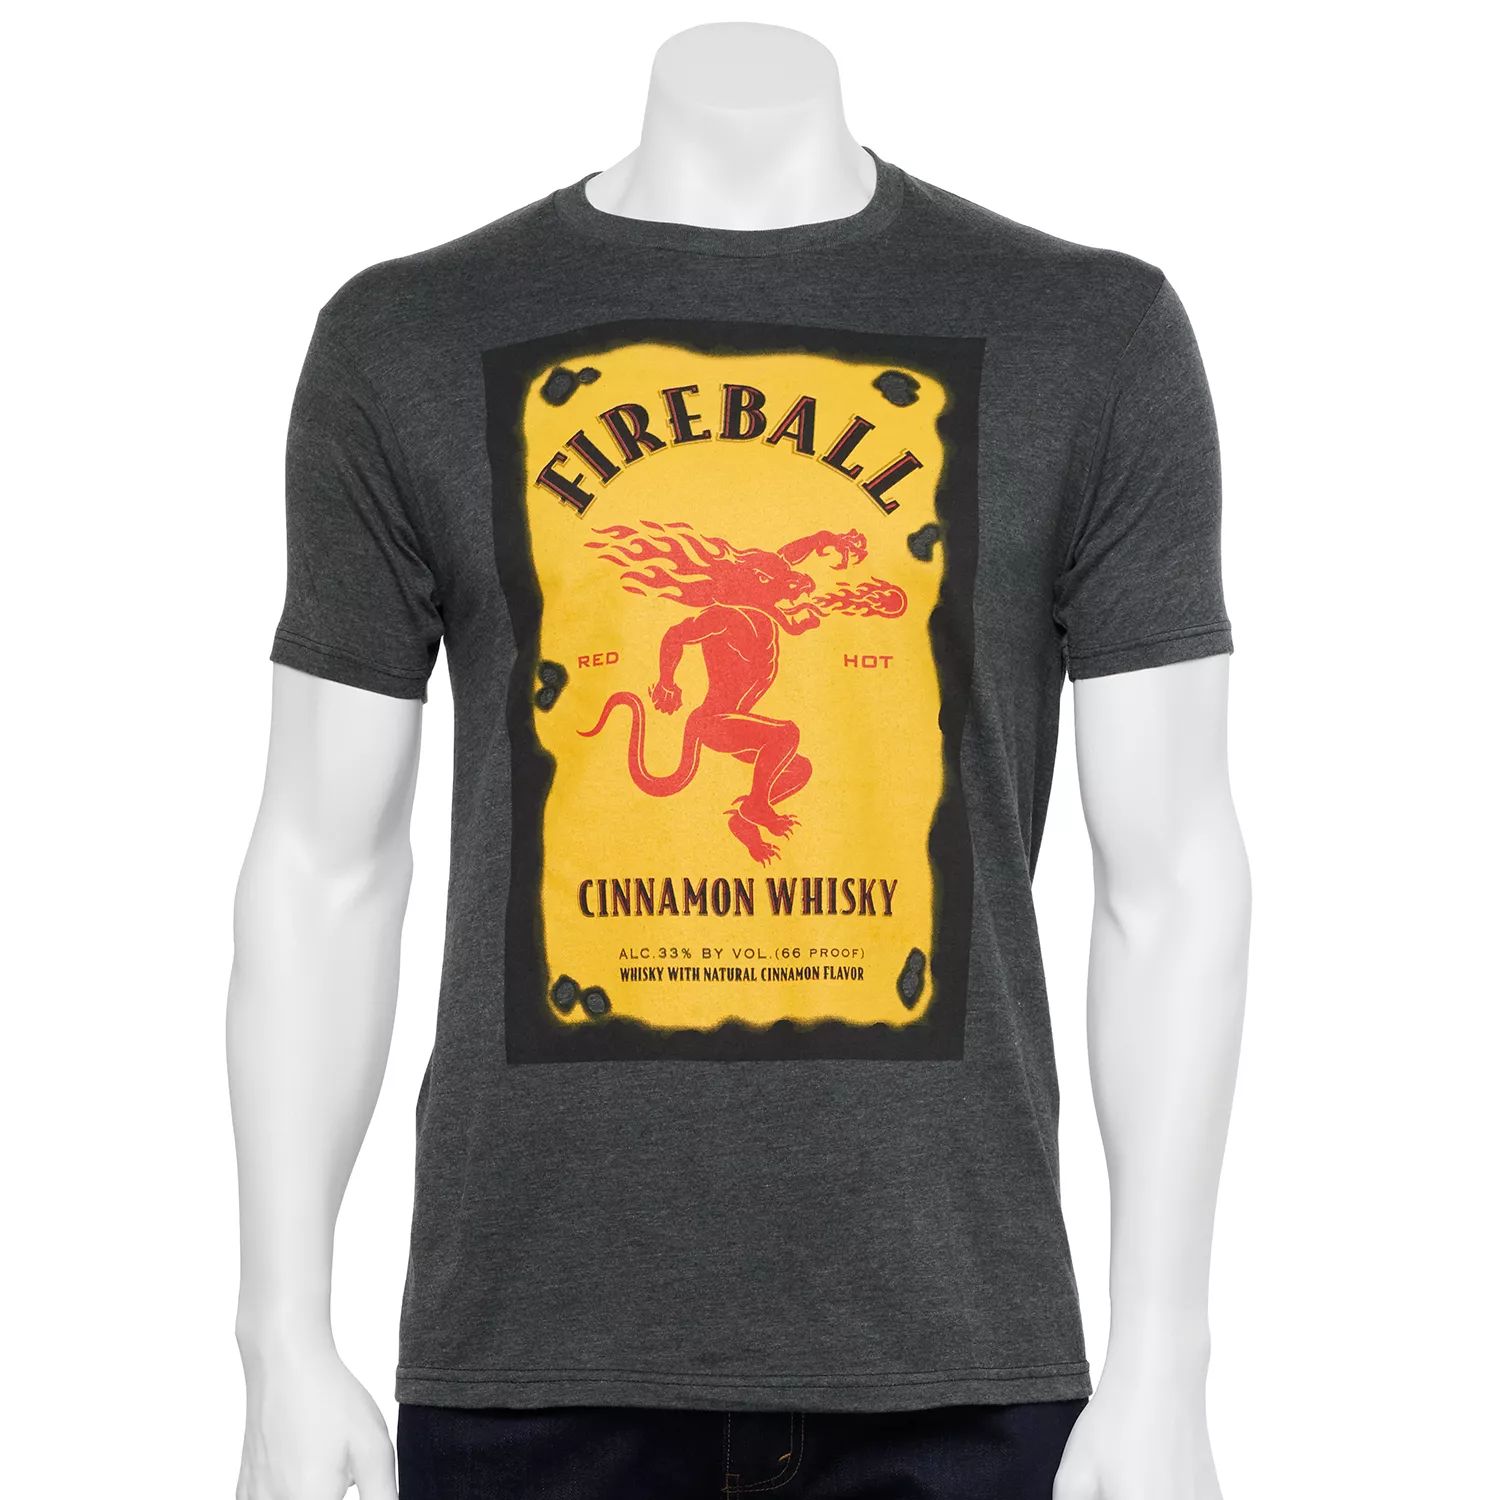 Мужская футболка с этикеткой для бутылки виски Fireball Licensed Character